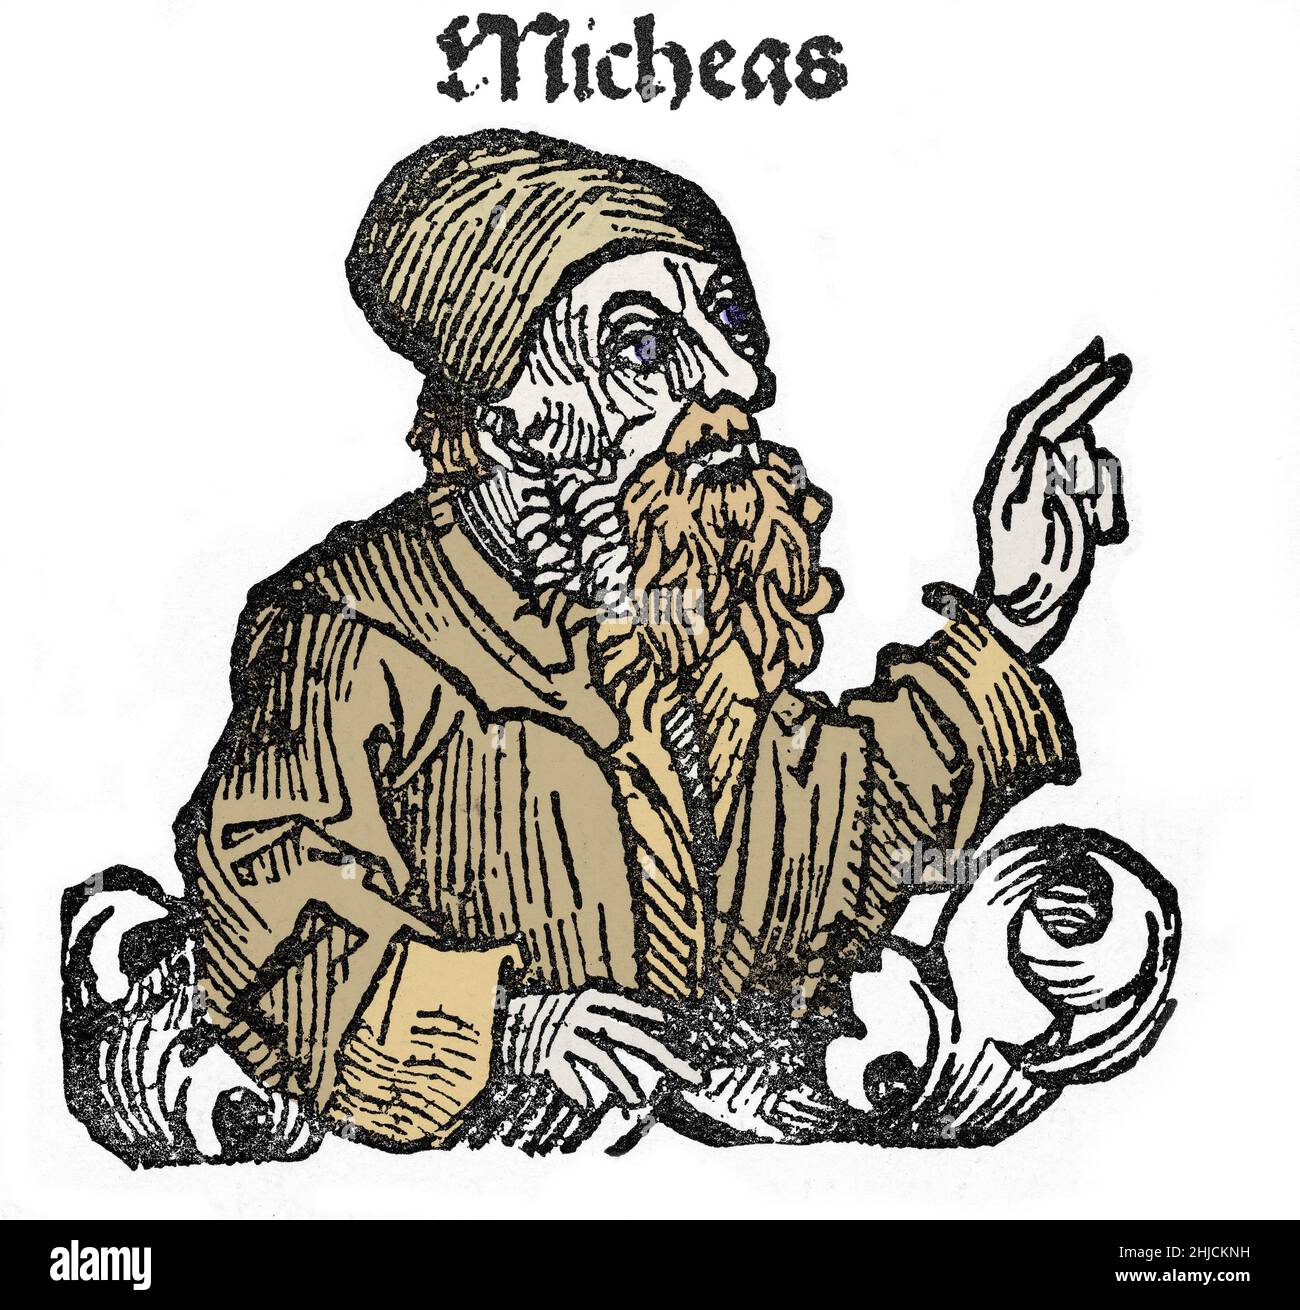 Illustrazione colorata di Micheas, dalla Cronaca di Norimberga, circa 1493. Micheas, o Michea, era un profeta del 8th secolo. Egli è l'autore del Libro di Michea della Bibbia ebraica. Foto Stock